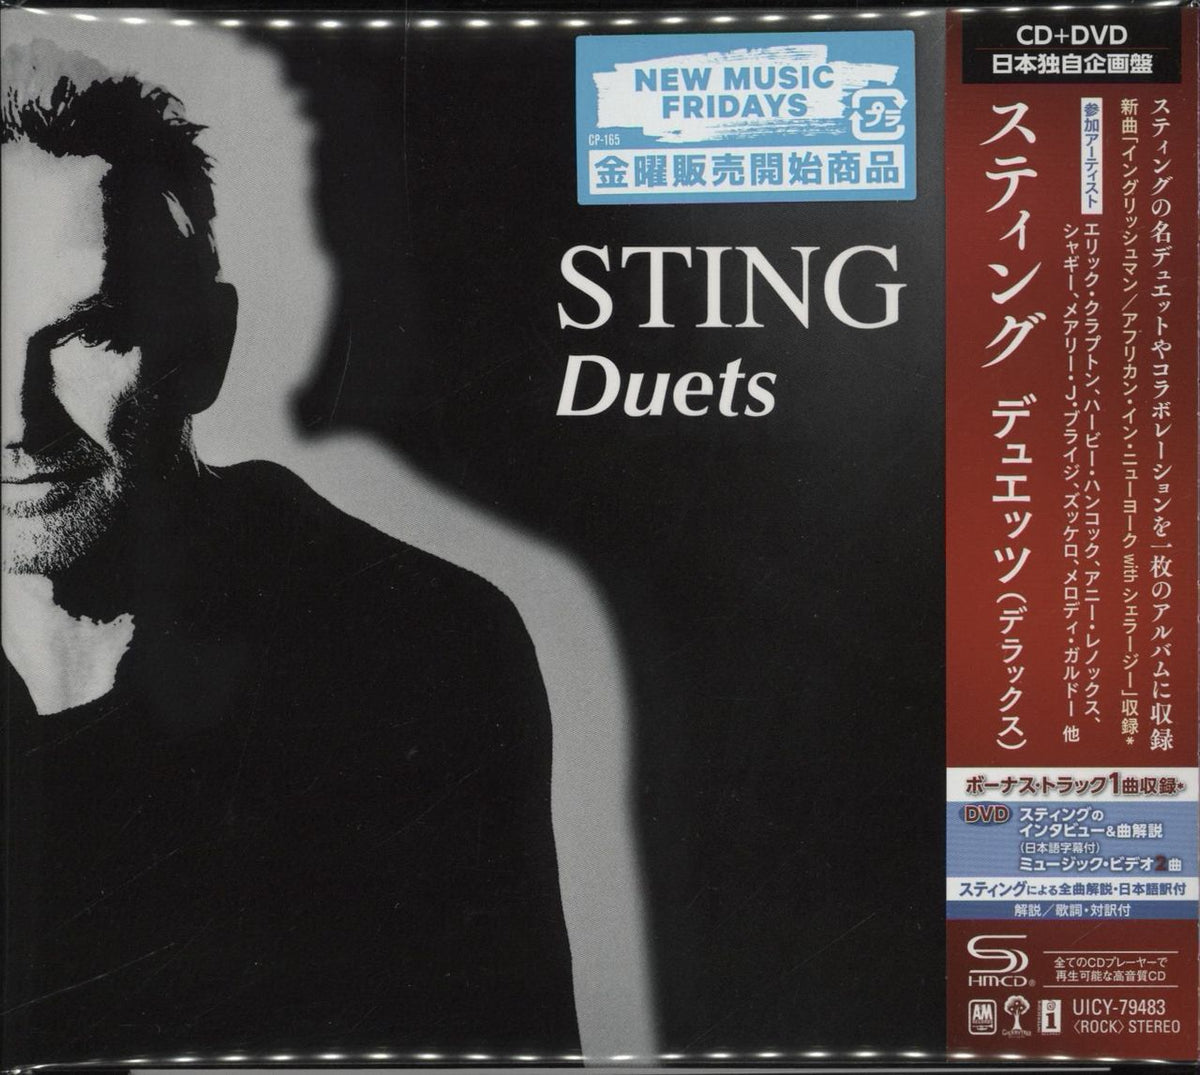 Sting Duets Japanese 2-disc CD/DVD set — RareVinyl.com